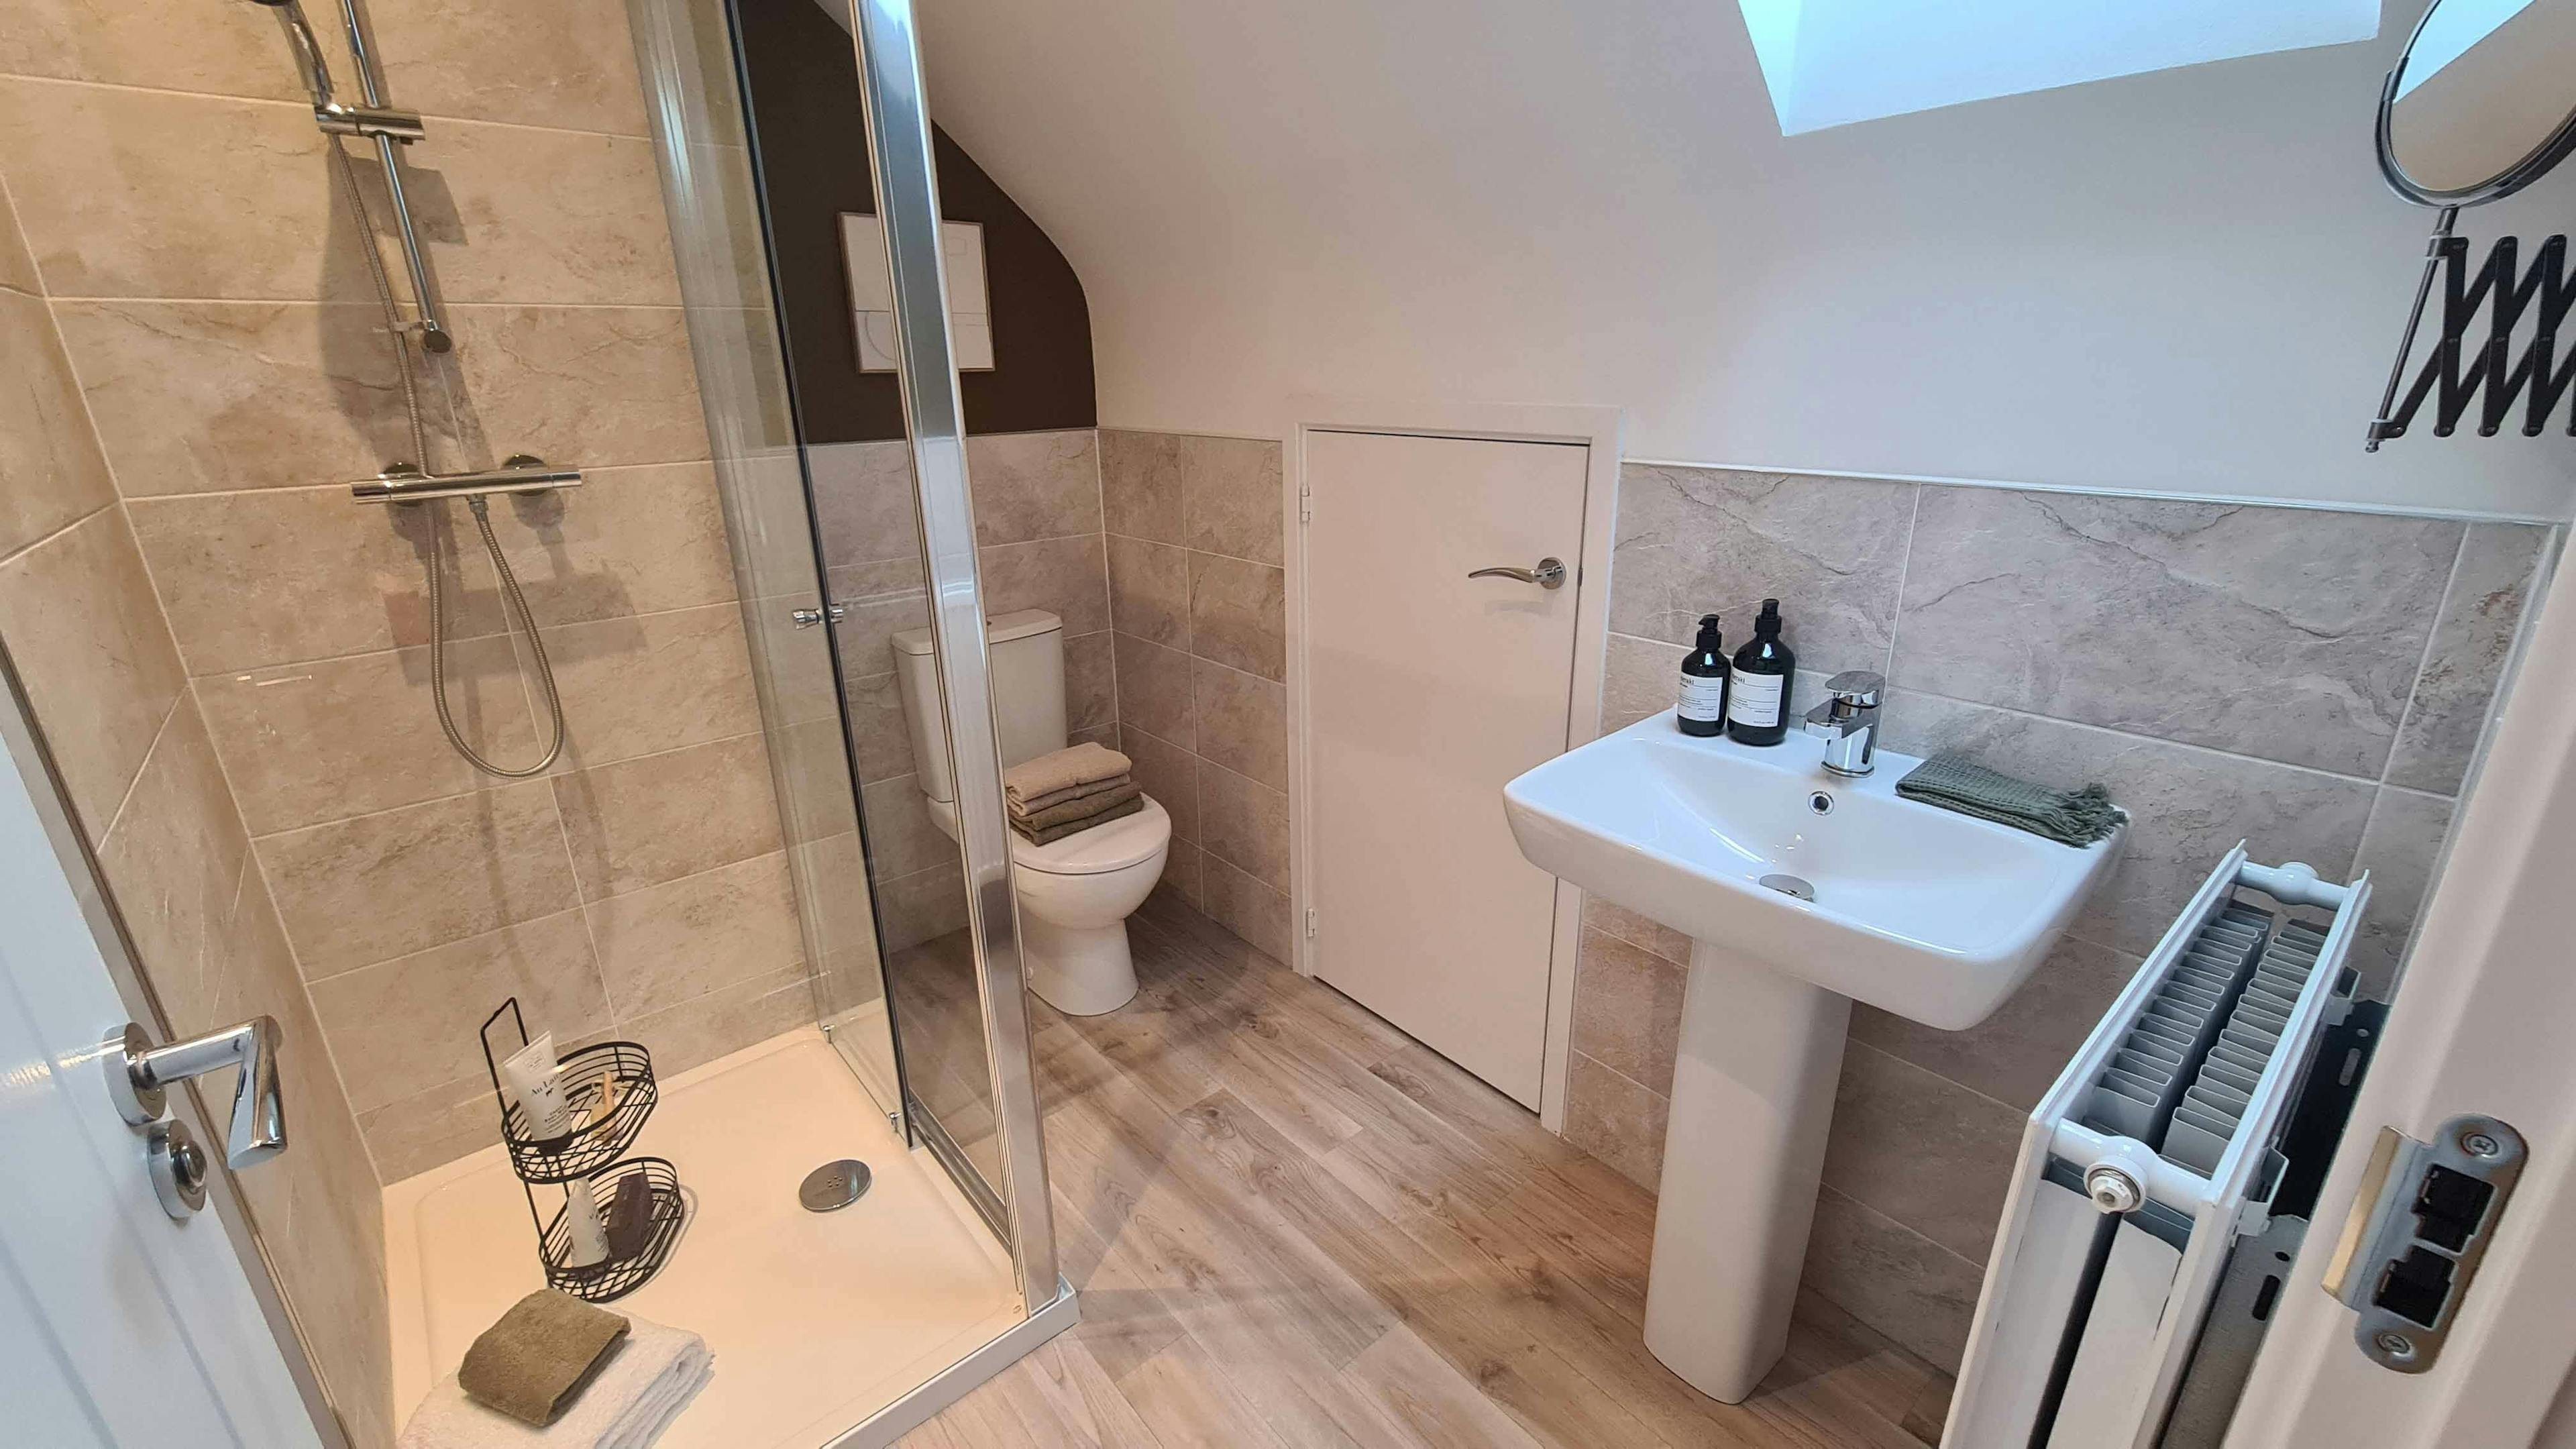 Keepmoat homes bathroom flooring